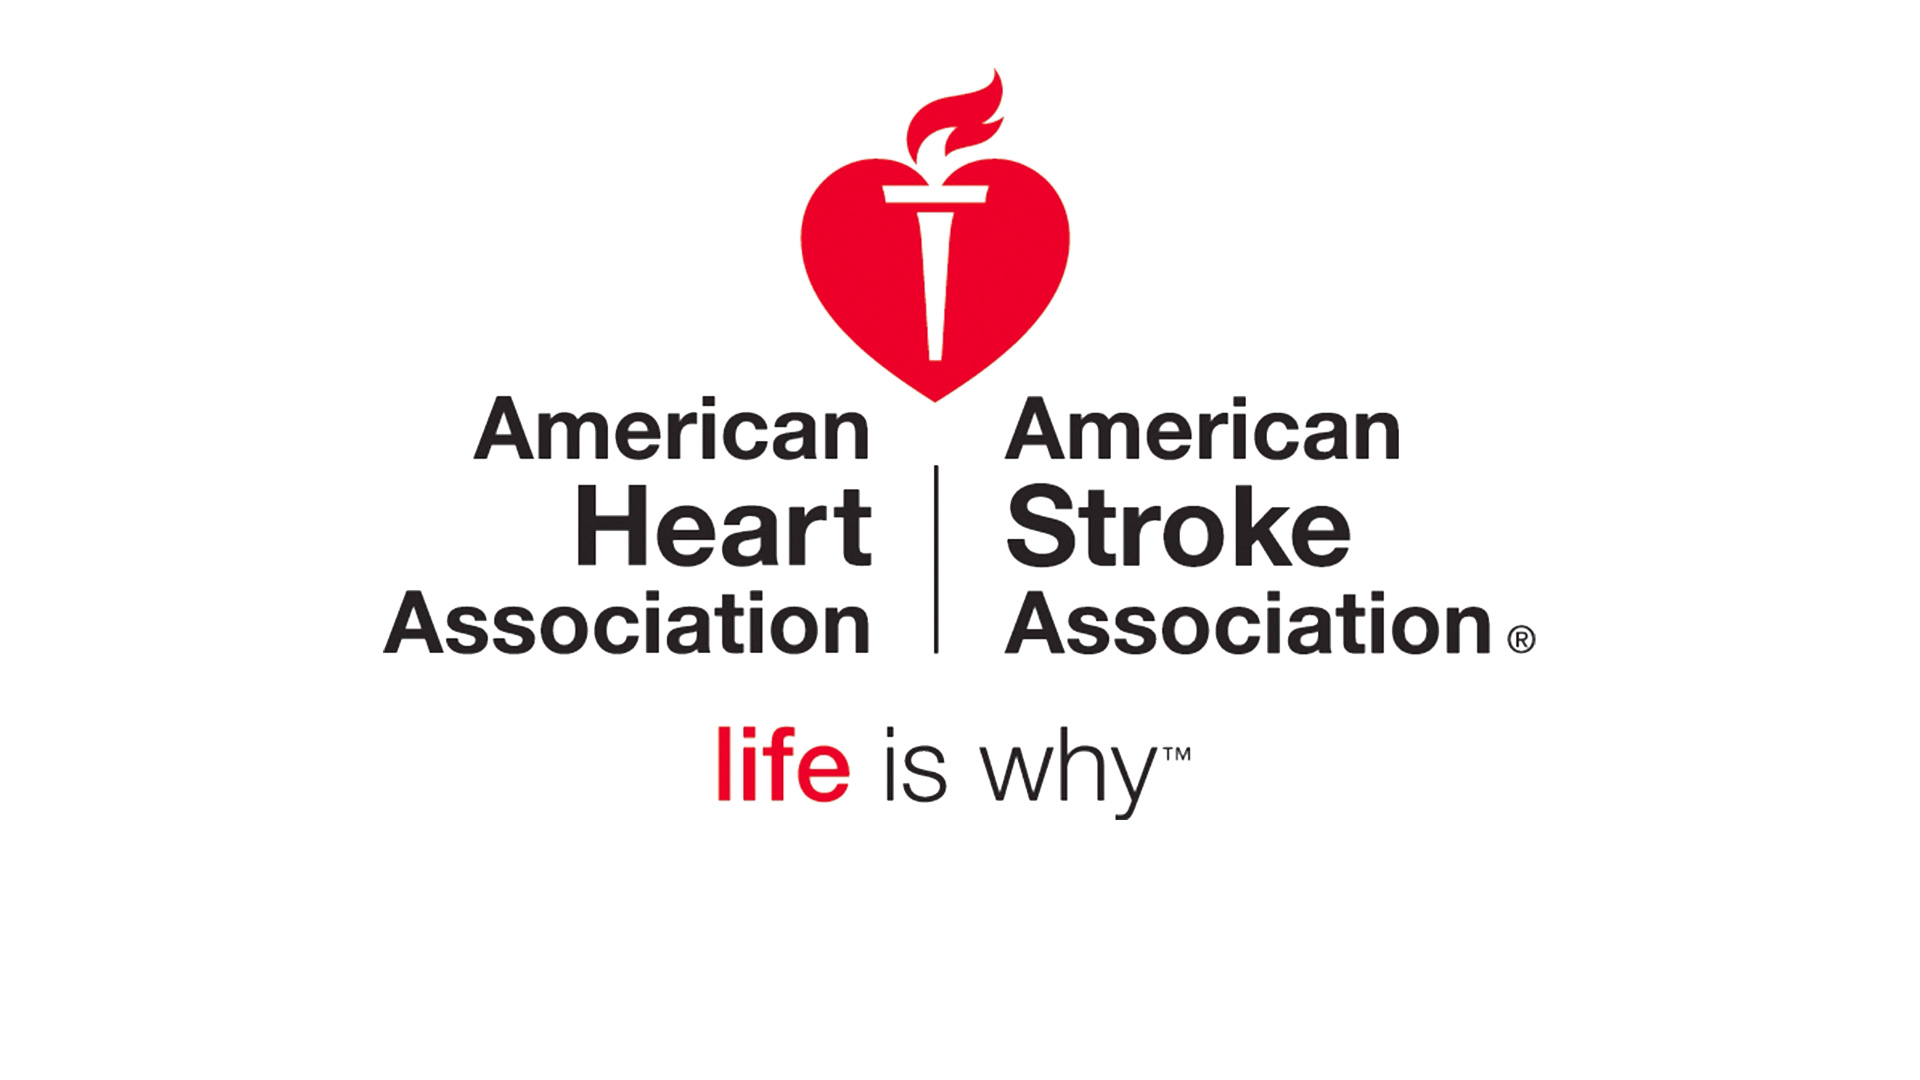 American heart. Американская кардиологическая Ассоциация. Значок американской ассоциации сердца. Картинка  American Heart Association?. Герб American Heart Association.